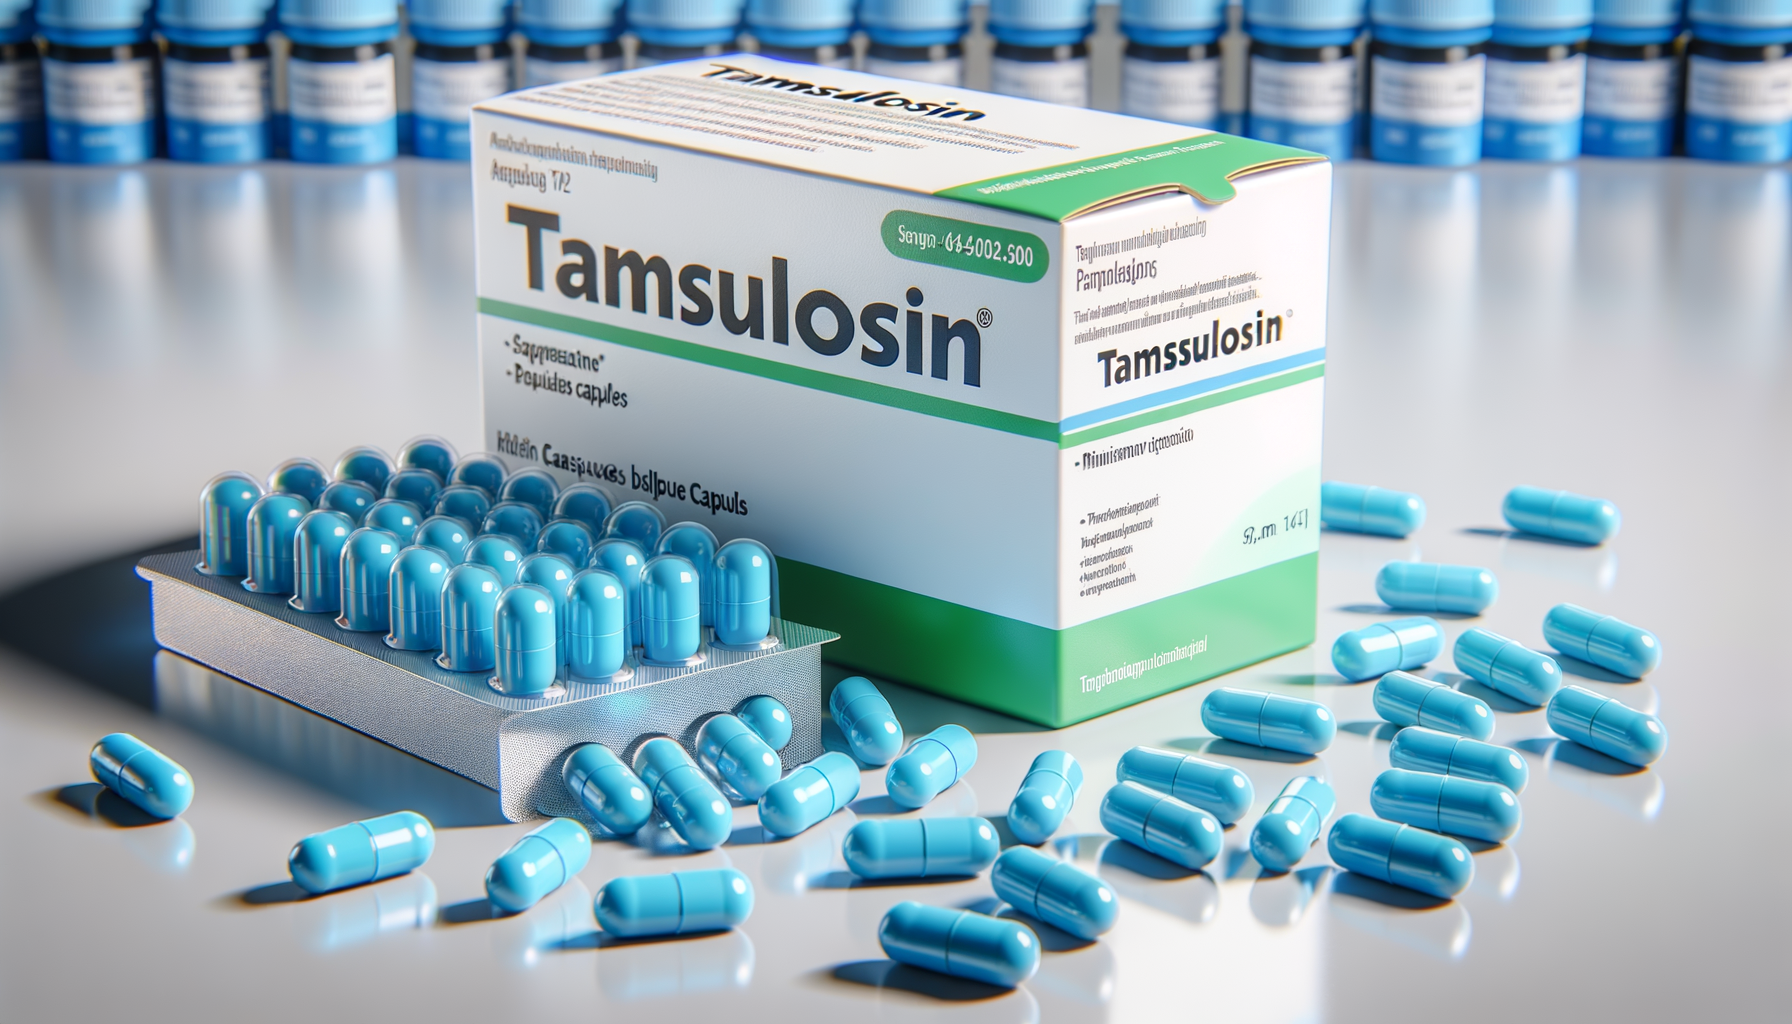 Quali sono gli effetti collaterali della tamsulosina?